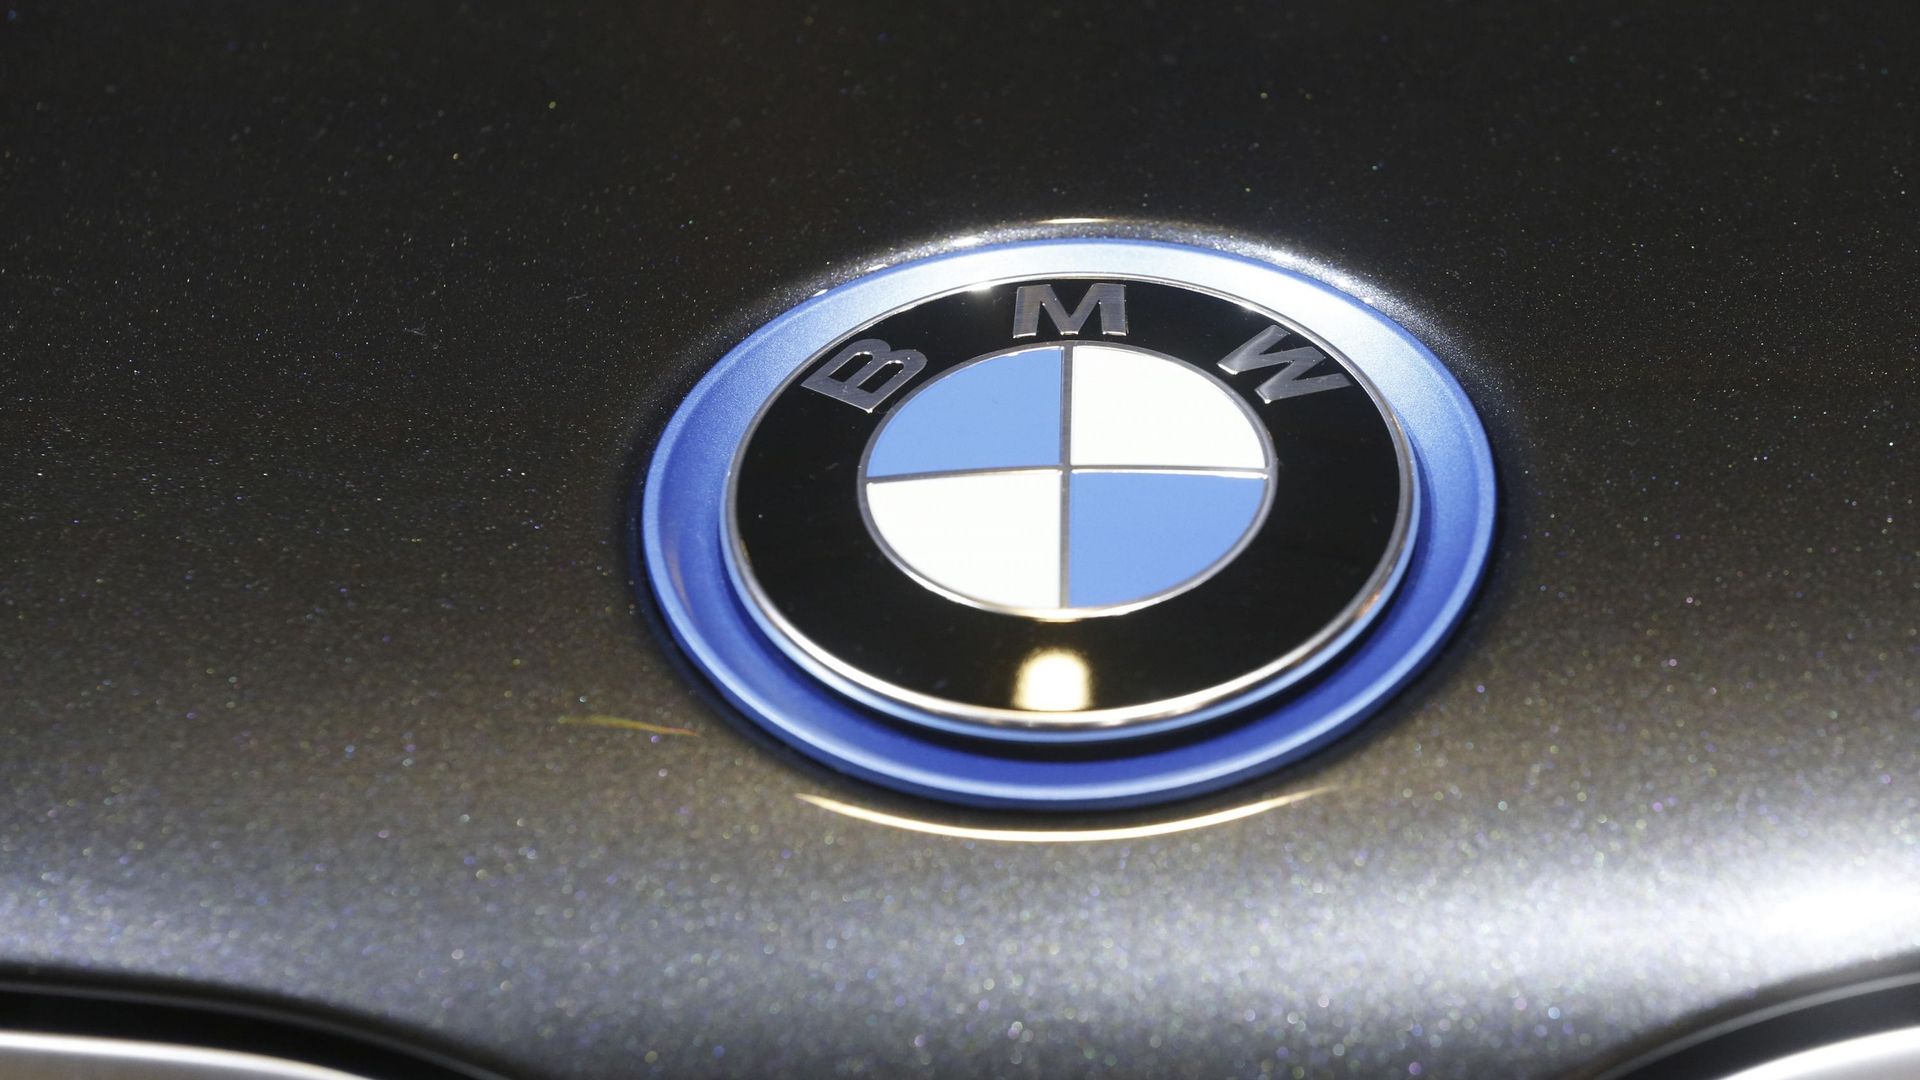 Rappel de véhicules BMW: 'Les clients belges seront contactés dans